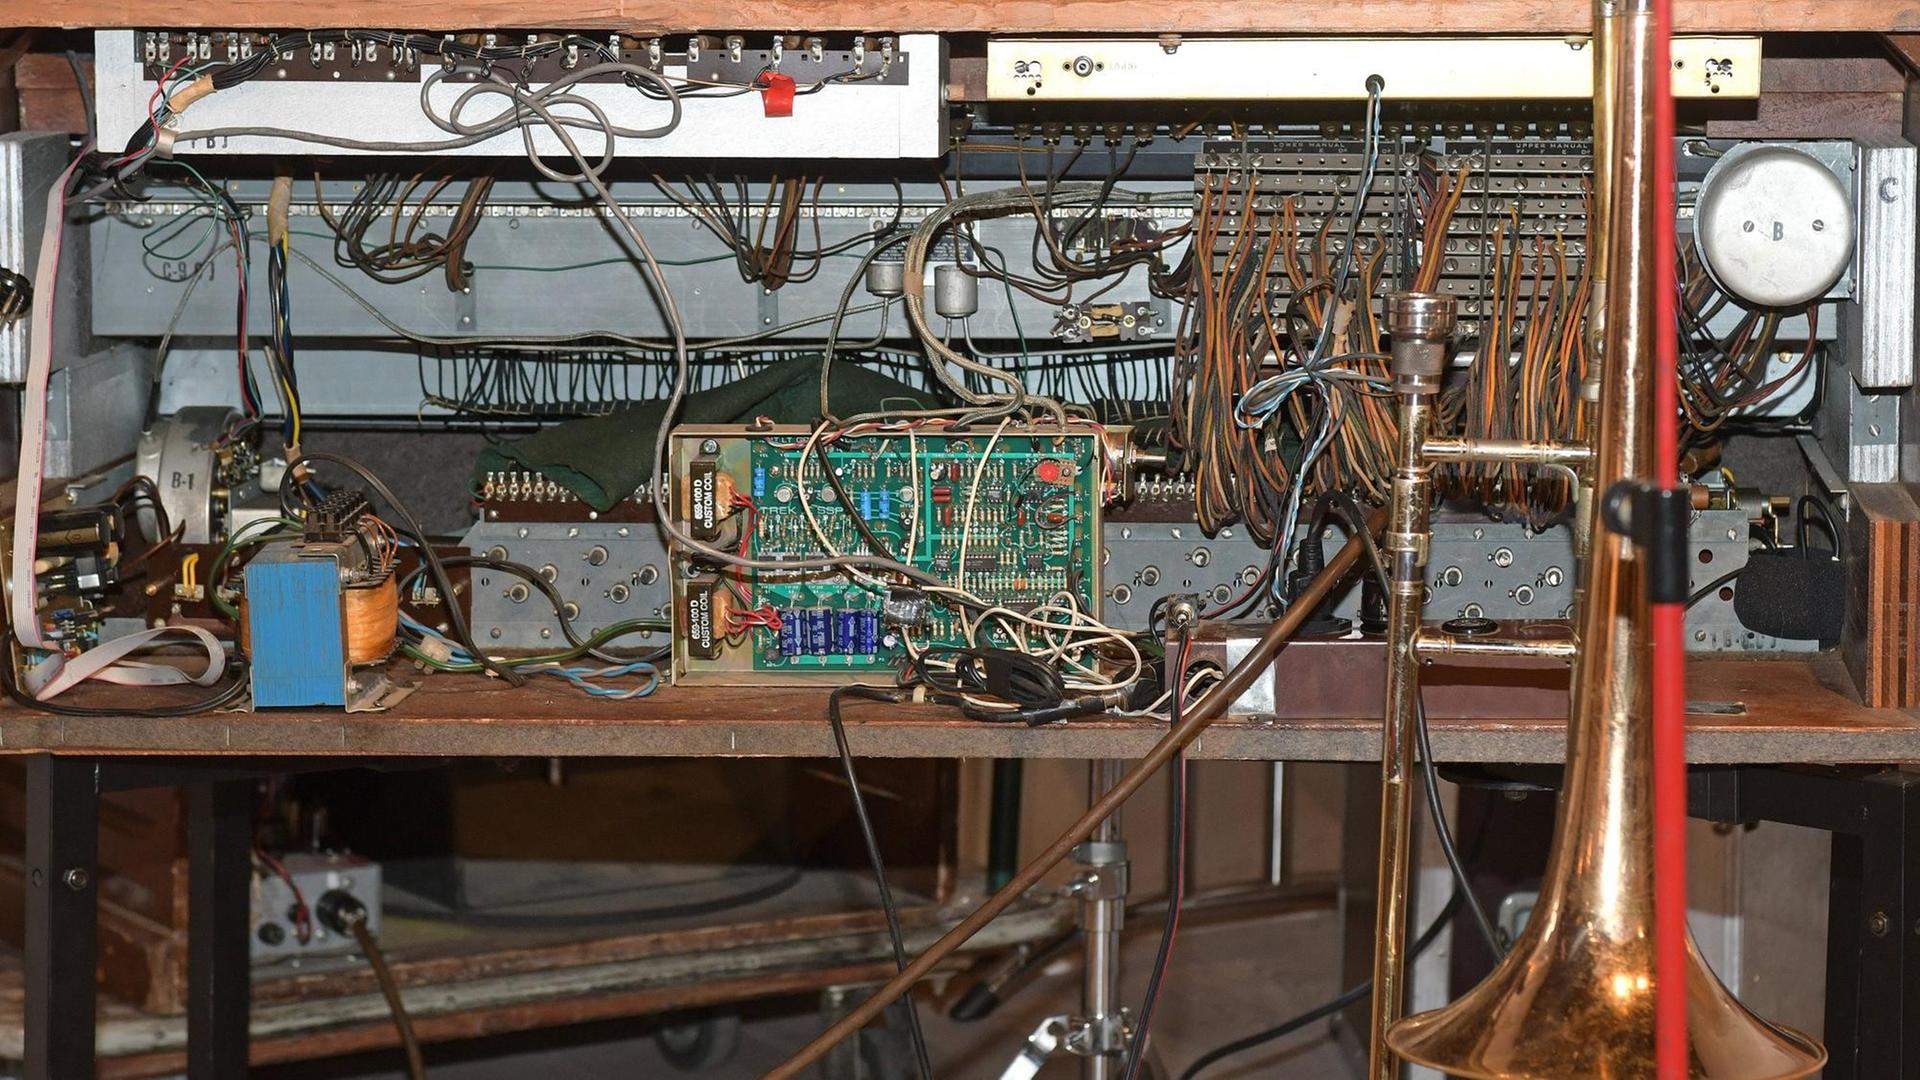 Dieses Bild zeigt das Innenleben einer Hammondorgel.